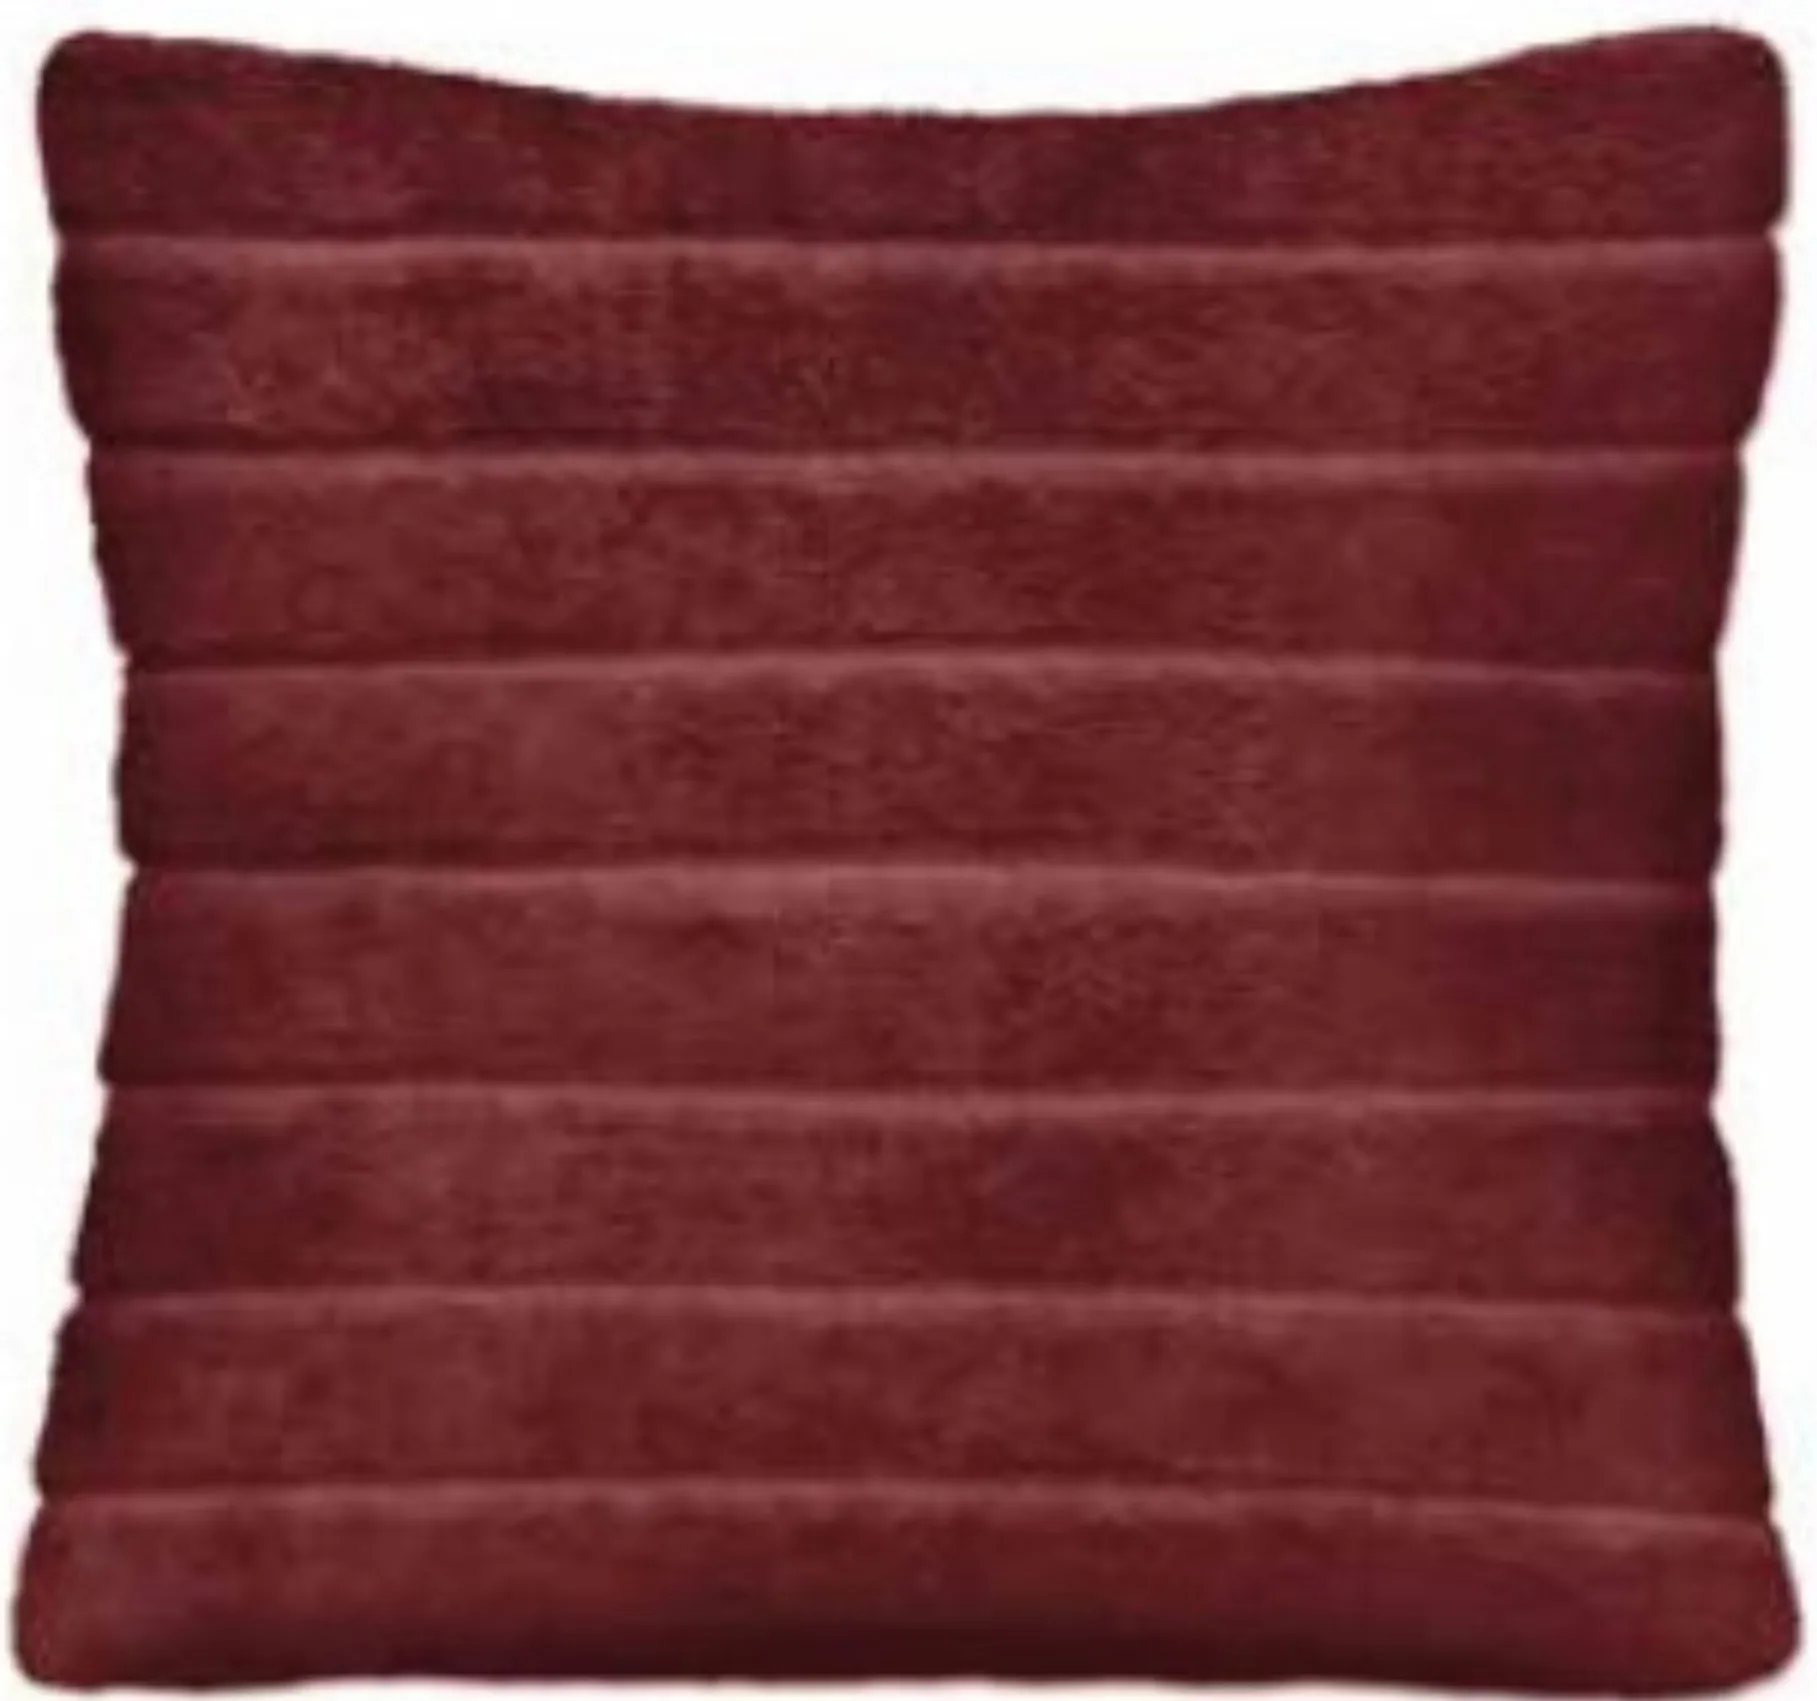 Burgundy Ribbed Faux Fur Pillow 17"W x 17"H